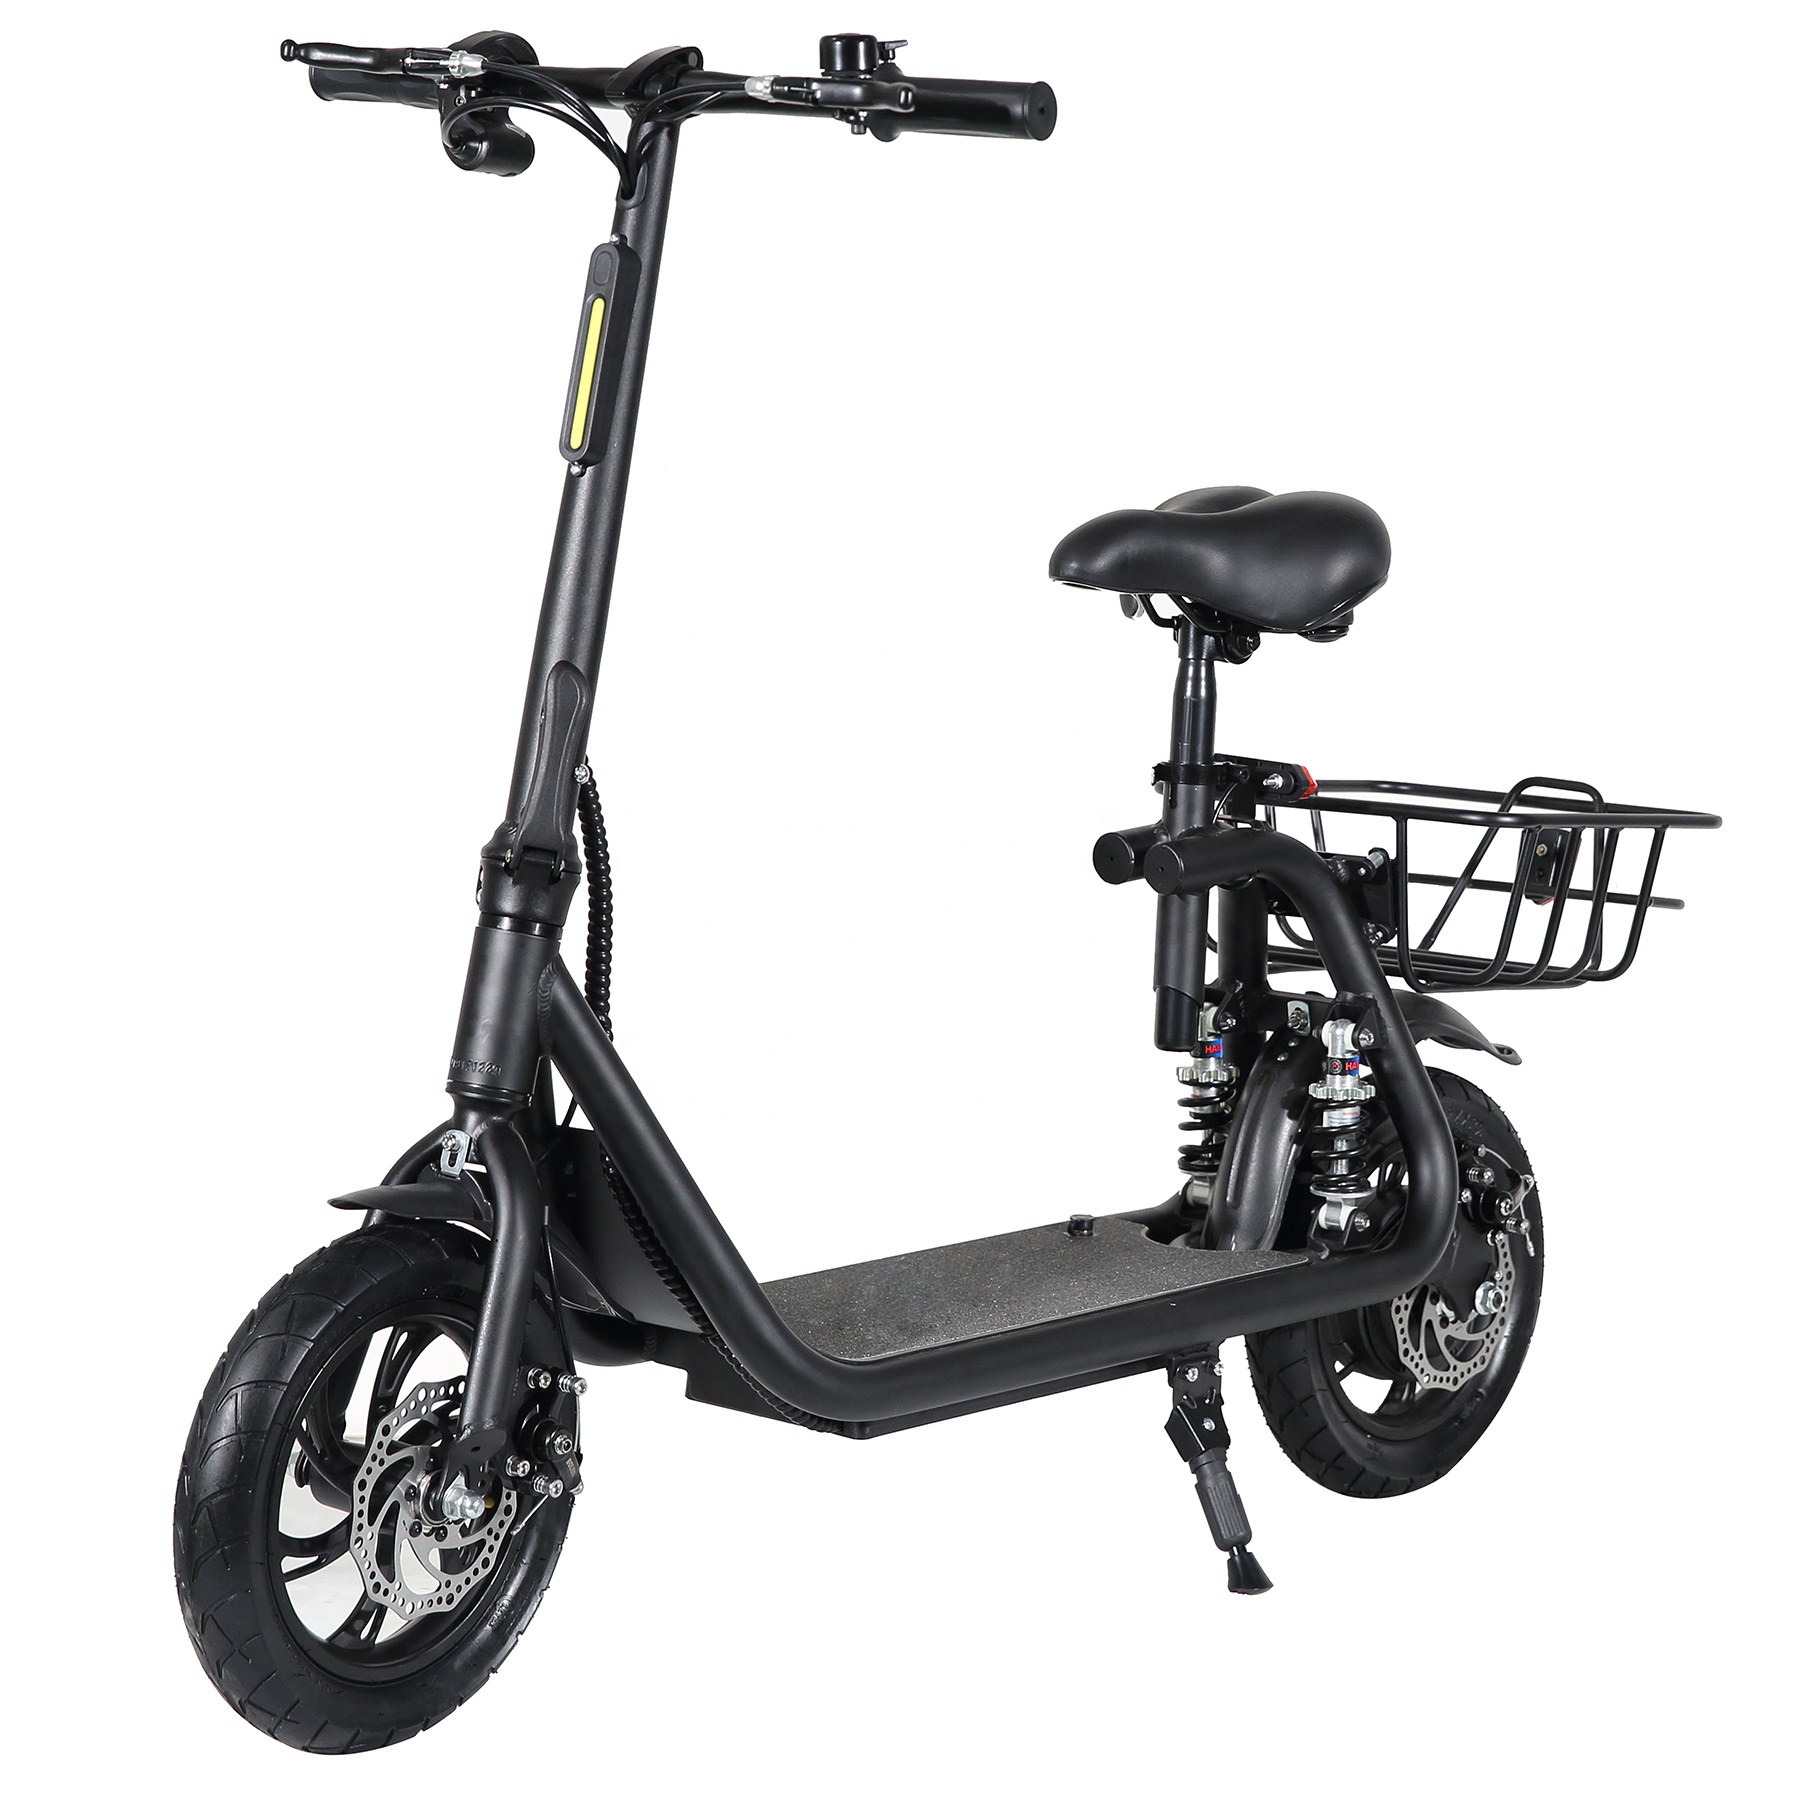 Scooter สกู๊ตเตอร์ไฟฟ้า จักรยานไฟฟ้า รุ่นใหม่มีโช๊คหลังคู่ 36v 350w  สินค้ามีหน้าร้าน+ศูนย์ซ่อม+อะไหล่